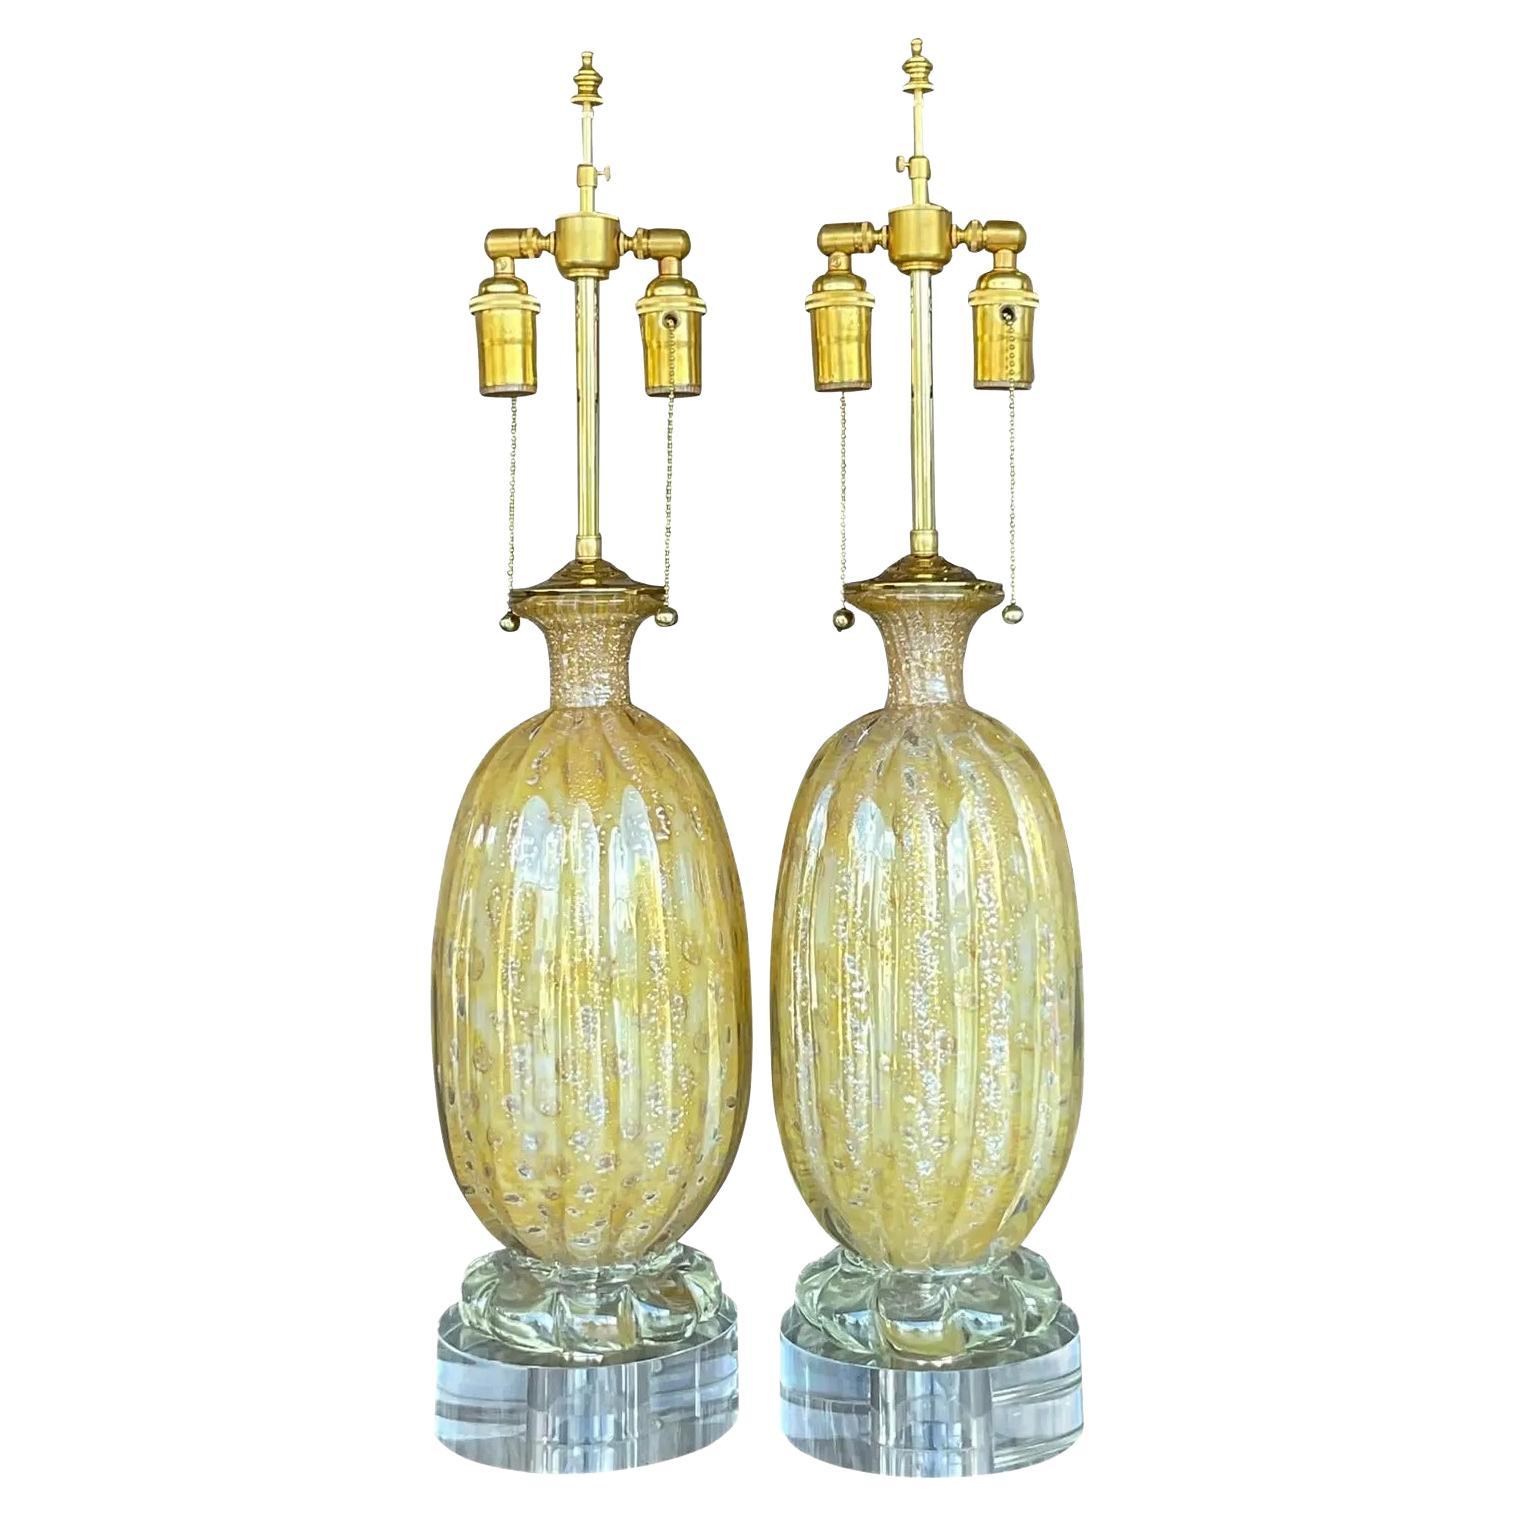 Vintage Regency restaurierte italienische Murano-Glas-Lampen - ein Paar